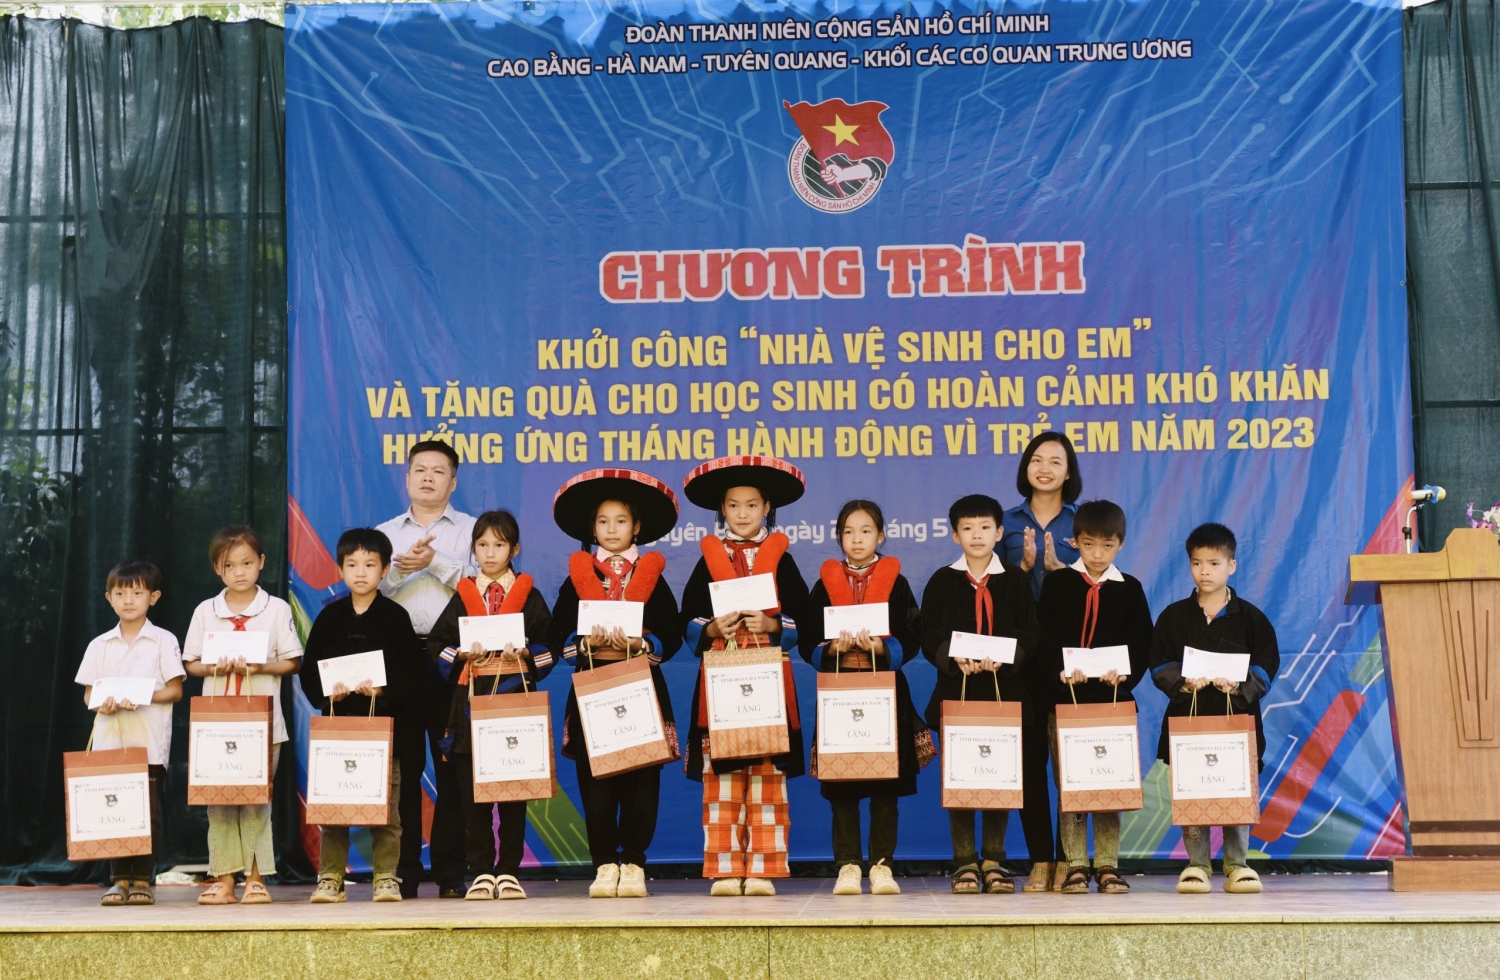 Trao tặng quà cho học sinh có hoàn cảnh khó khăn hướng ứng Tháng hành động vì trẻ em năm 2023 tại trường Tiểu học Thái Học, huyện Nguyên Bình